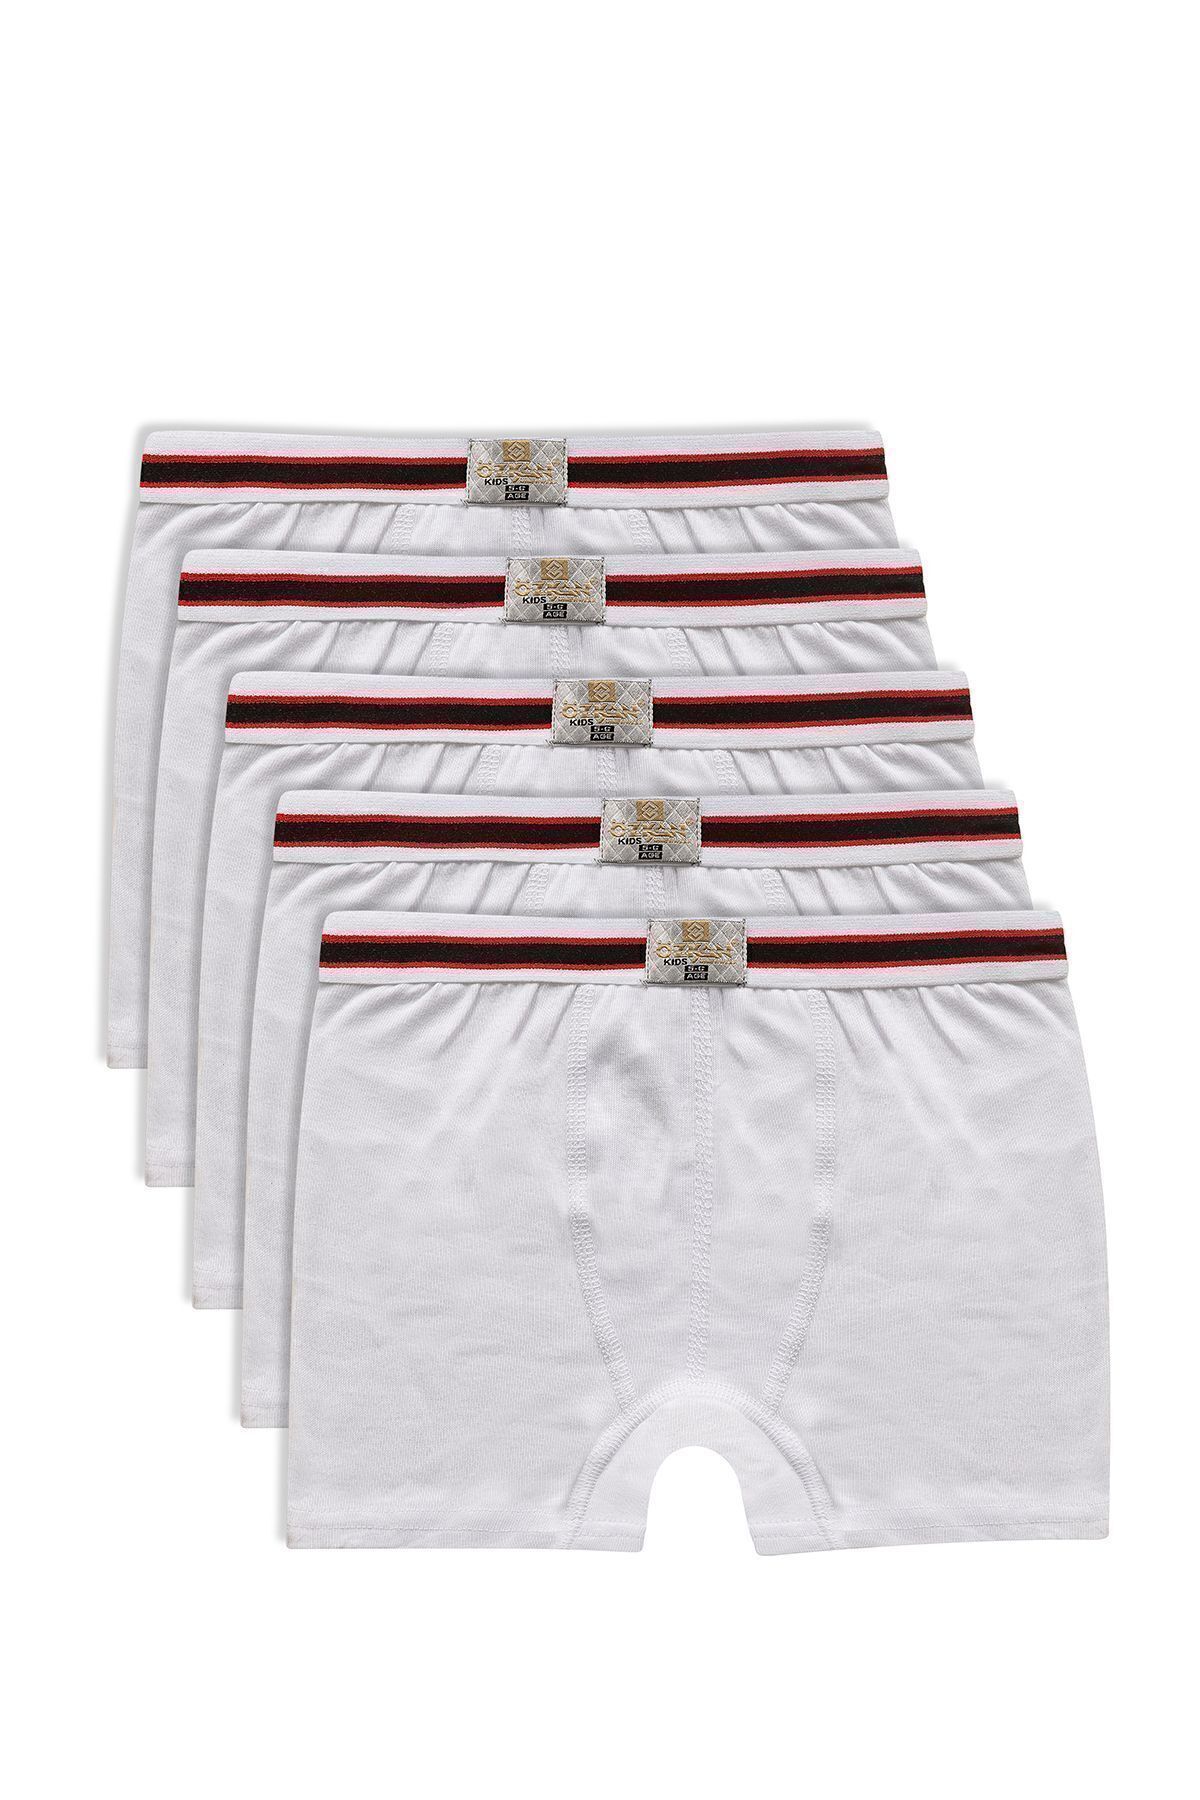 ÖZKAN underwear Özkan 0711 5'li Paket Erkek Çocuk %100 Pamuklu Esnek Yumuşak Boxer Şort